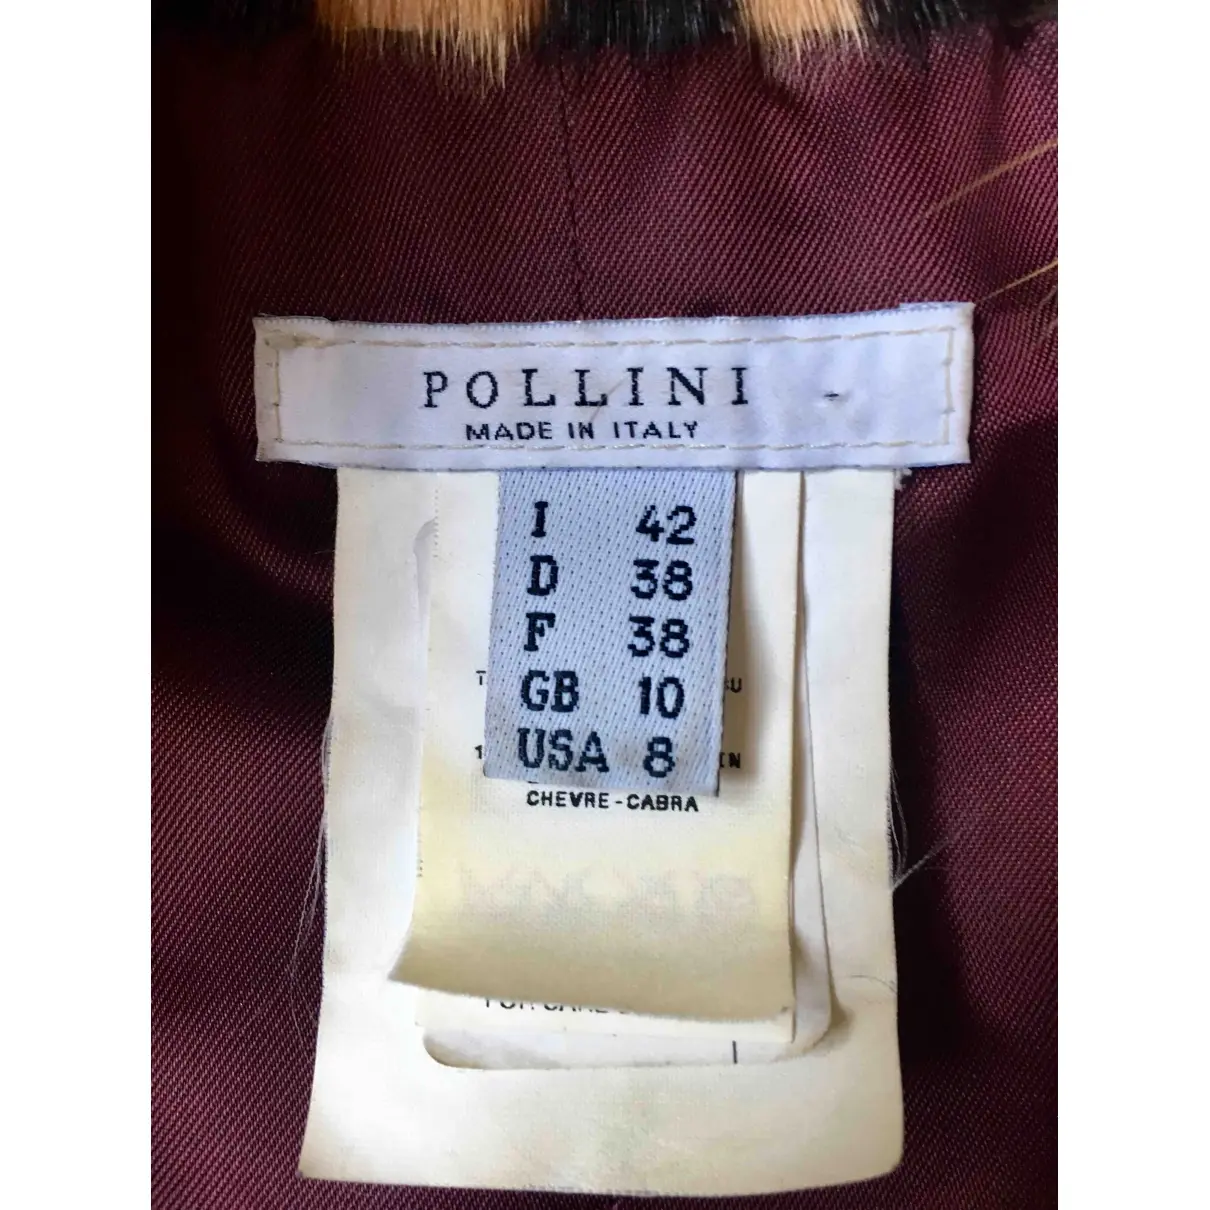 Buy Pollini Coat online